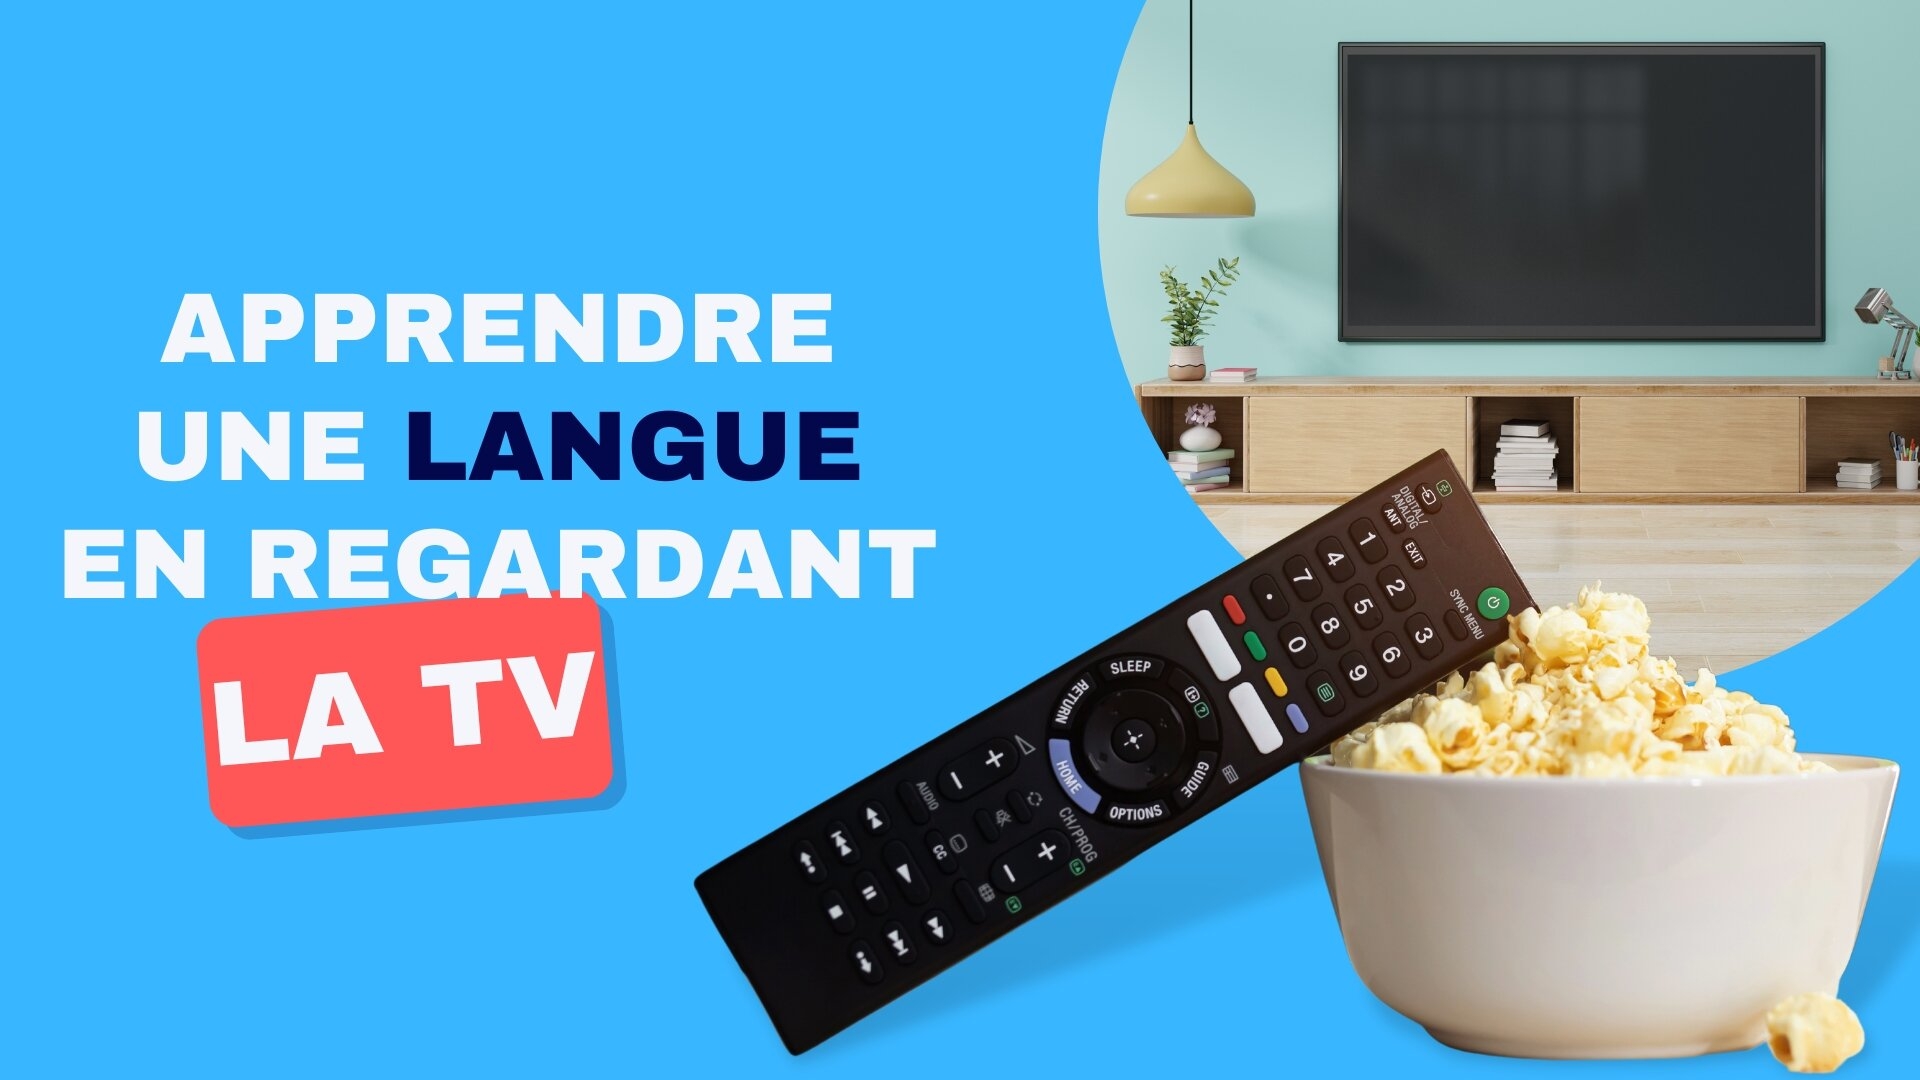 Apprendre une langue en regardant la télé ? C’est possible !